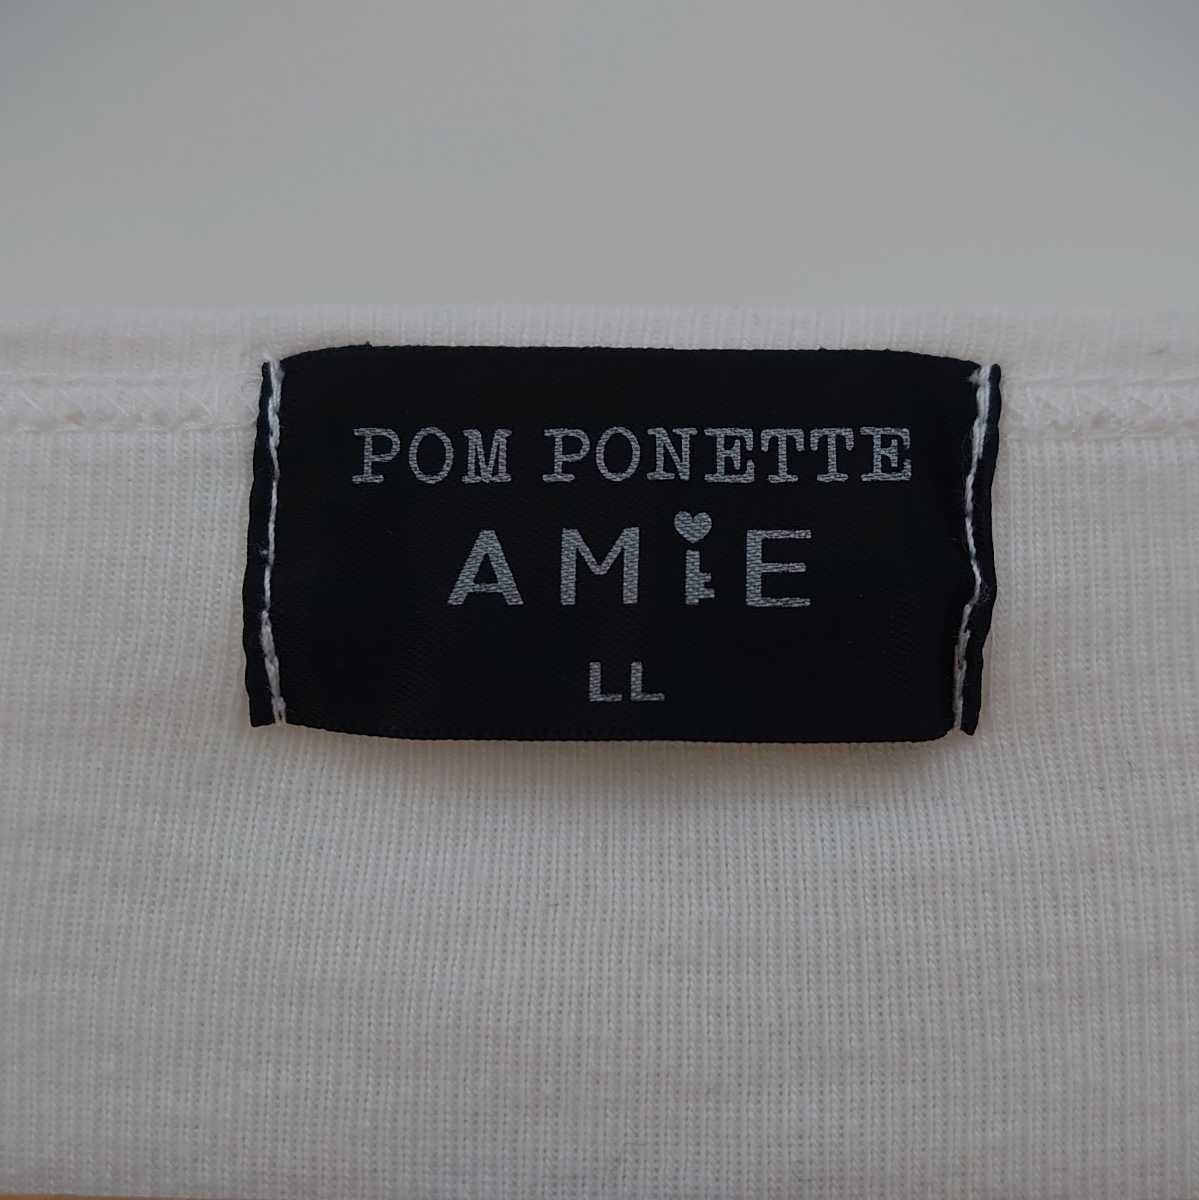  Pom Ponette белый 165cm LL размер длинный футболка трикотажный джемпер с длинным рукавом tops длинный рукав Narumi ya